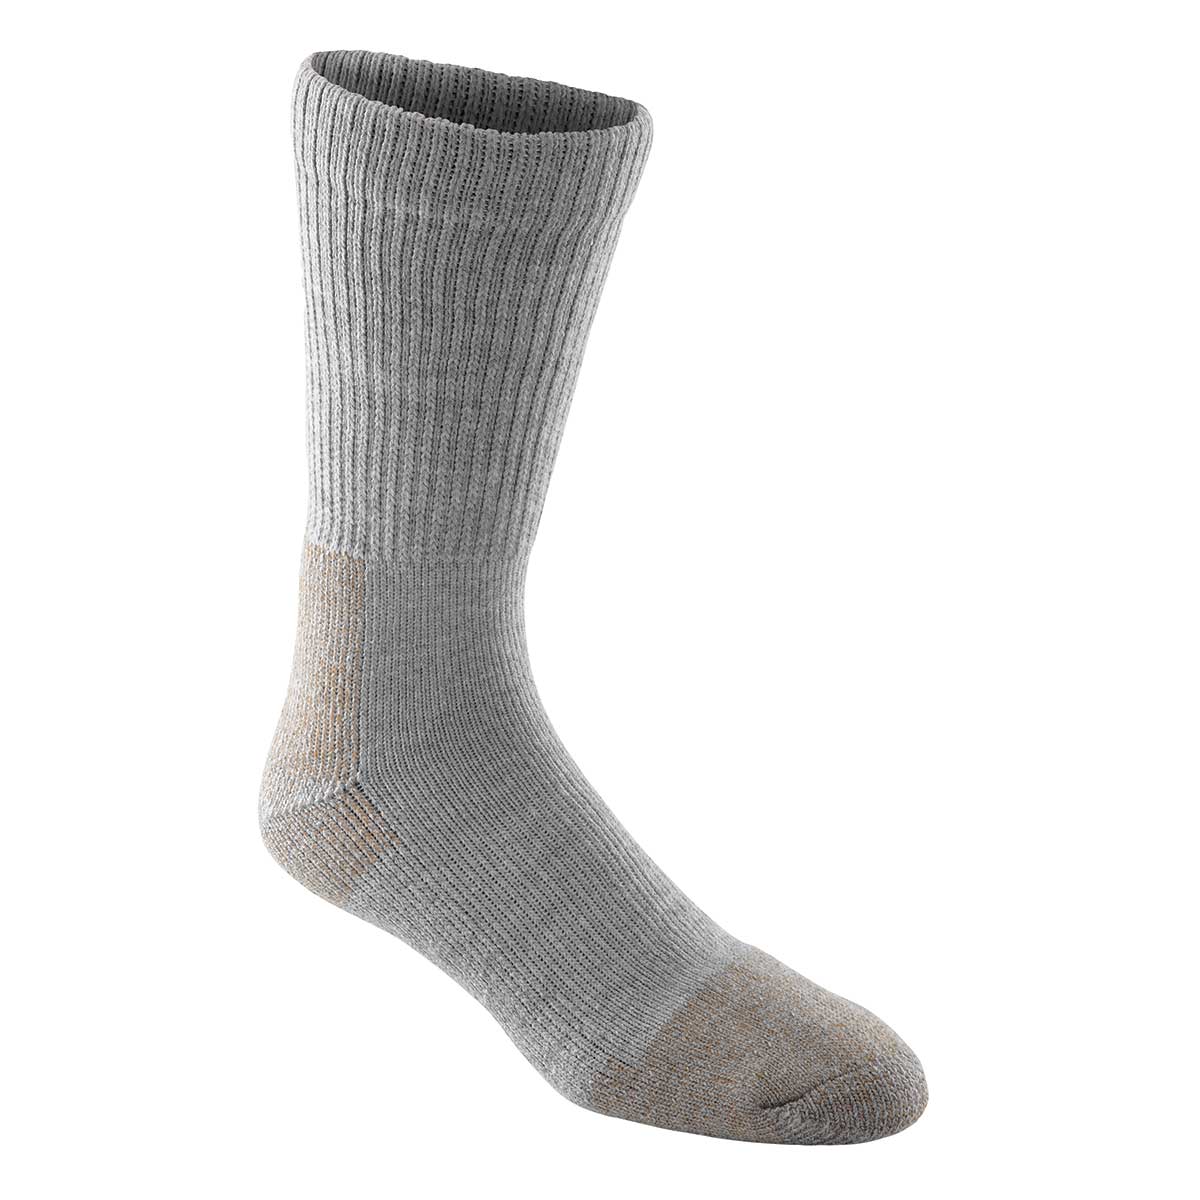 Steel Toe Work Socks, Pkg. of 2 Pair